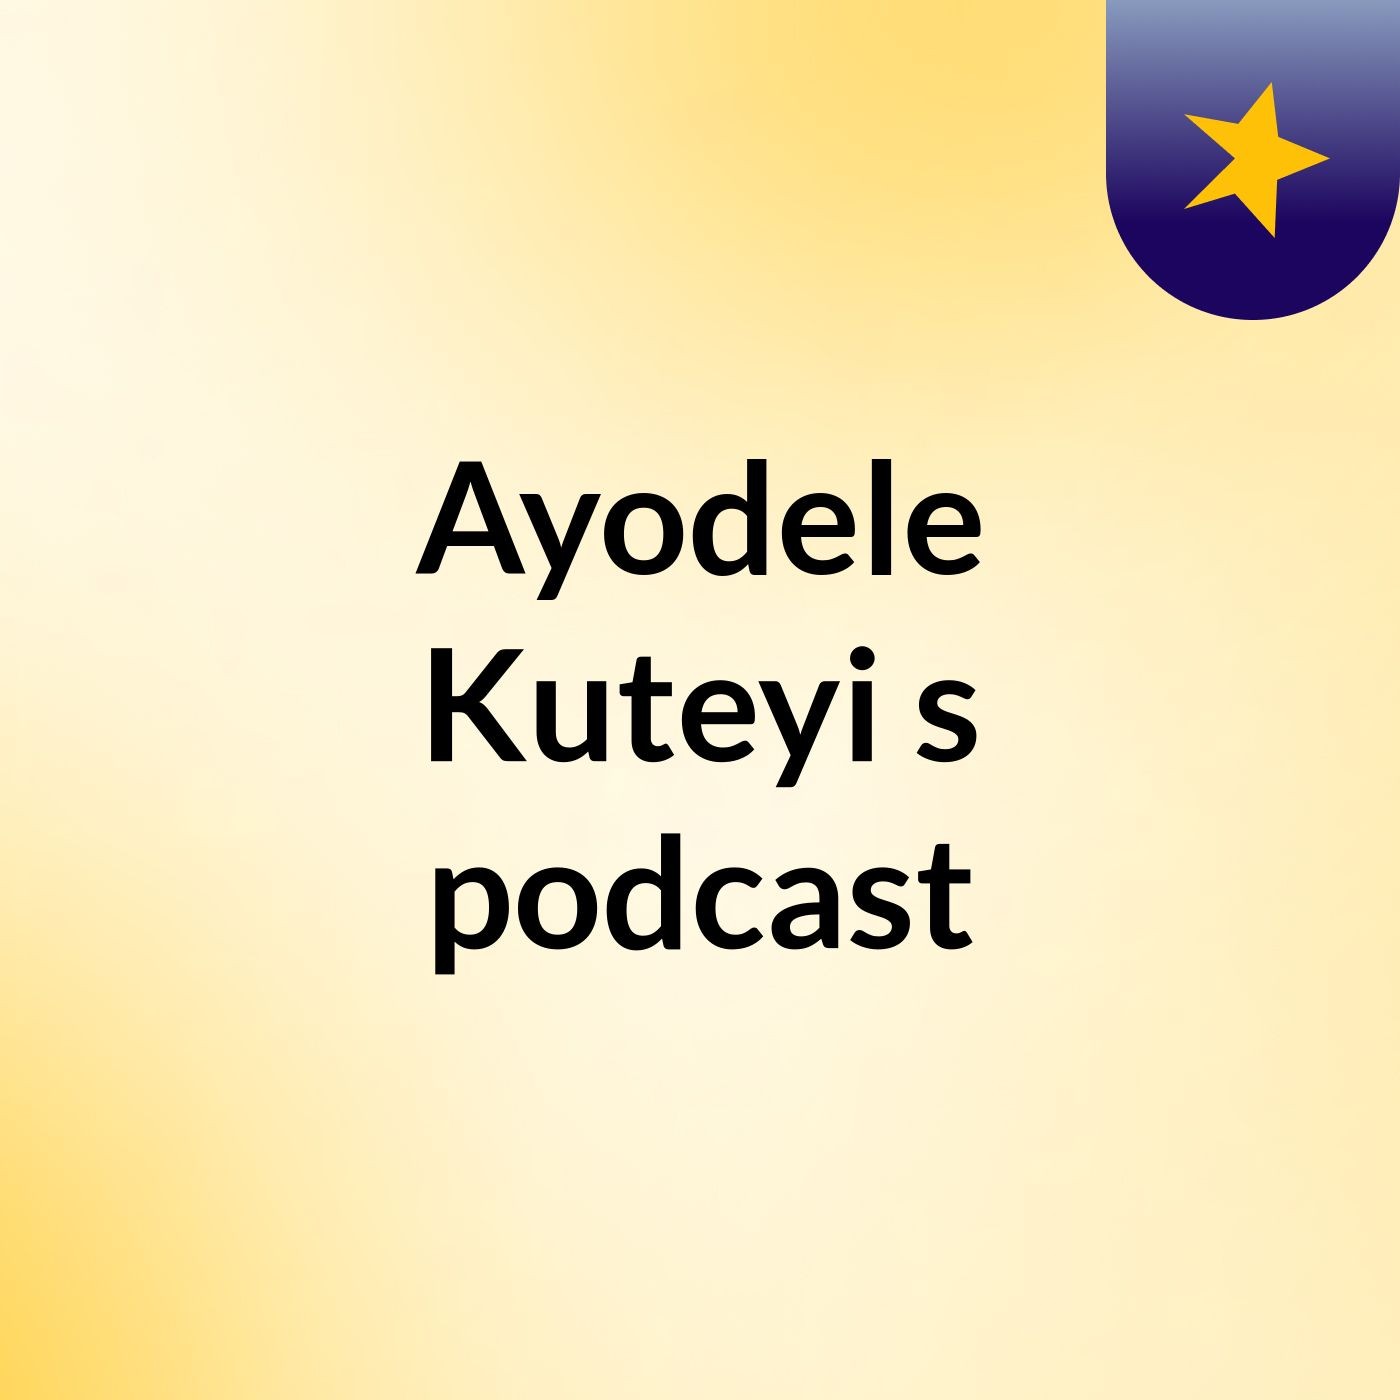 Episode 17 - Ayodele Kuteyi's podcast